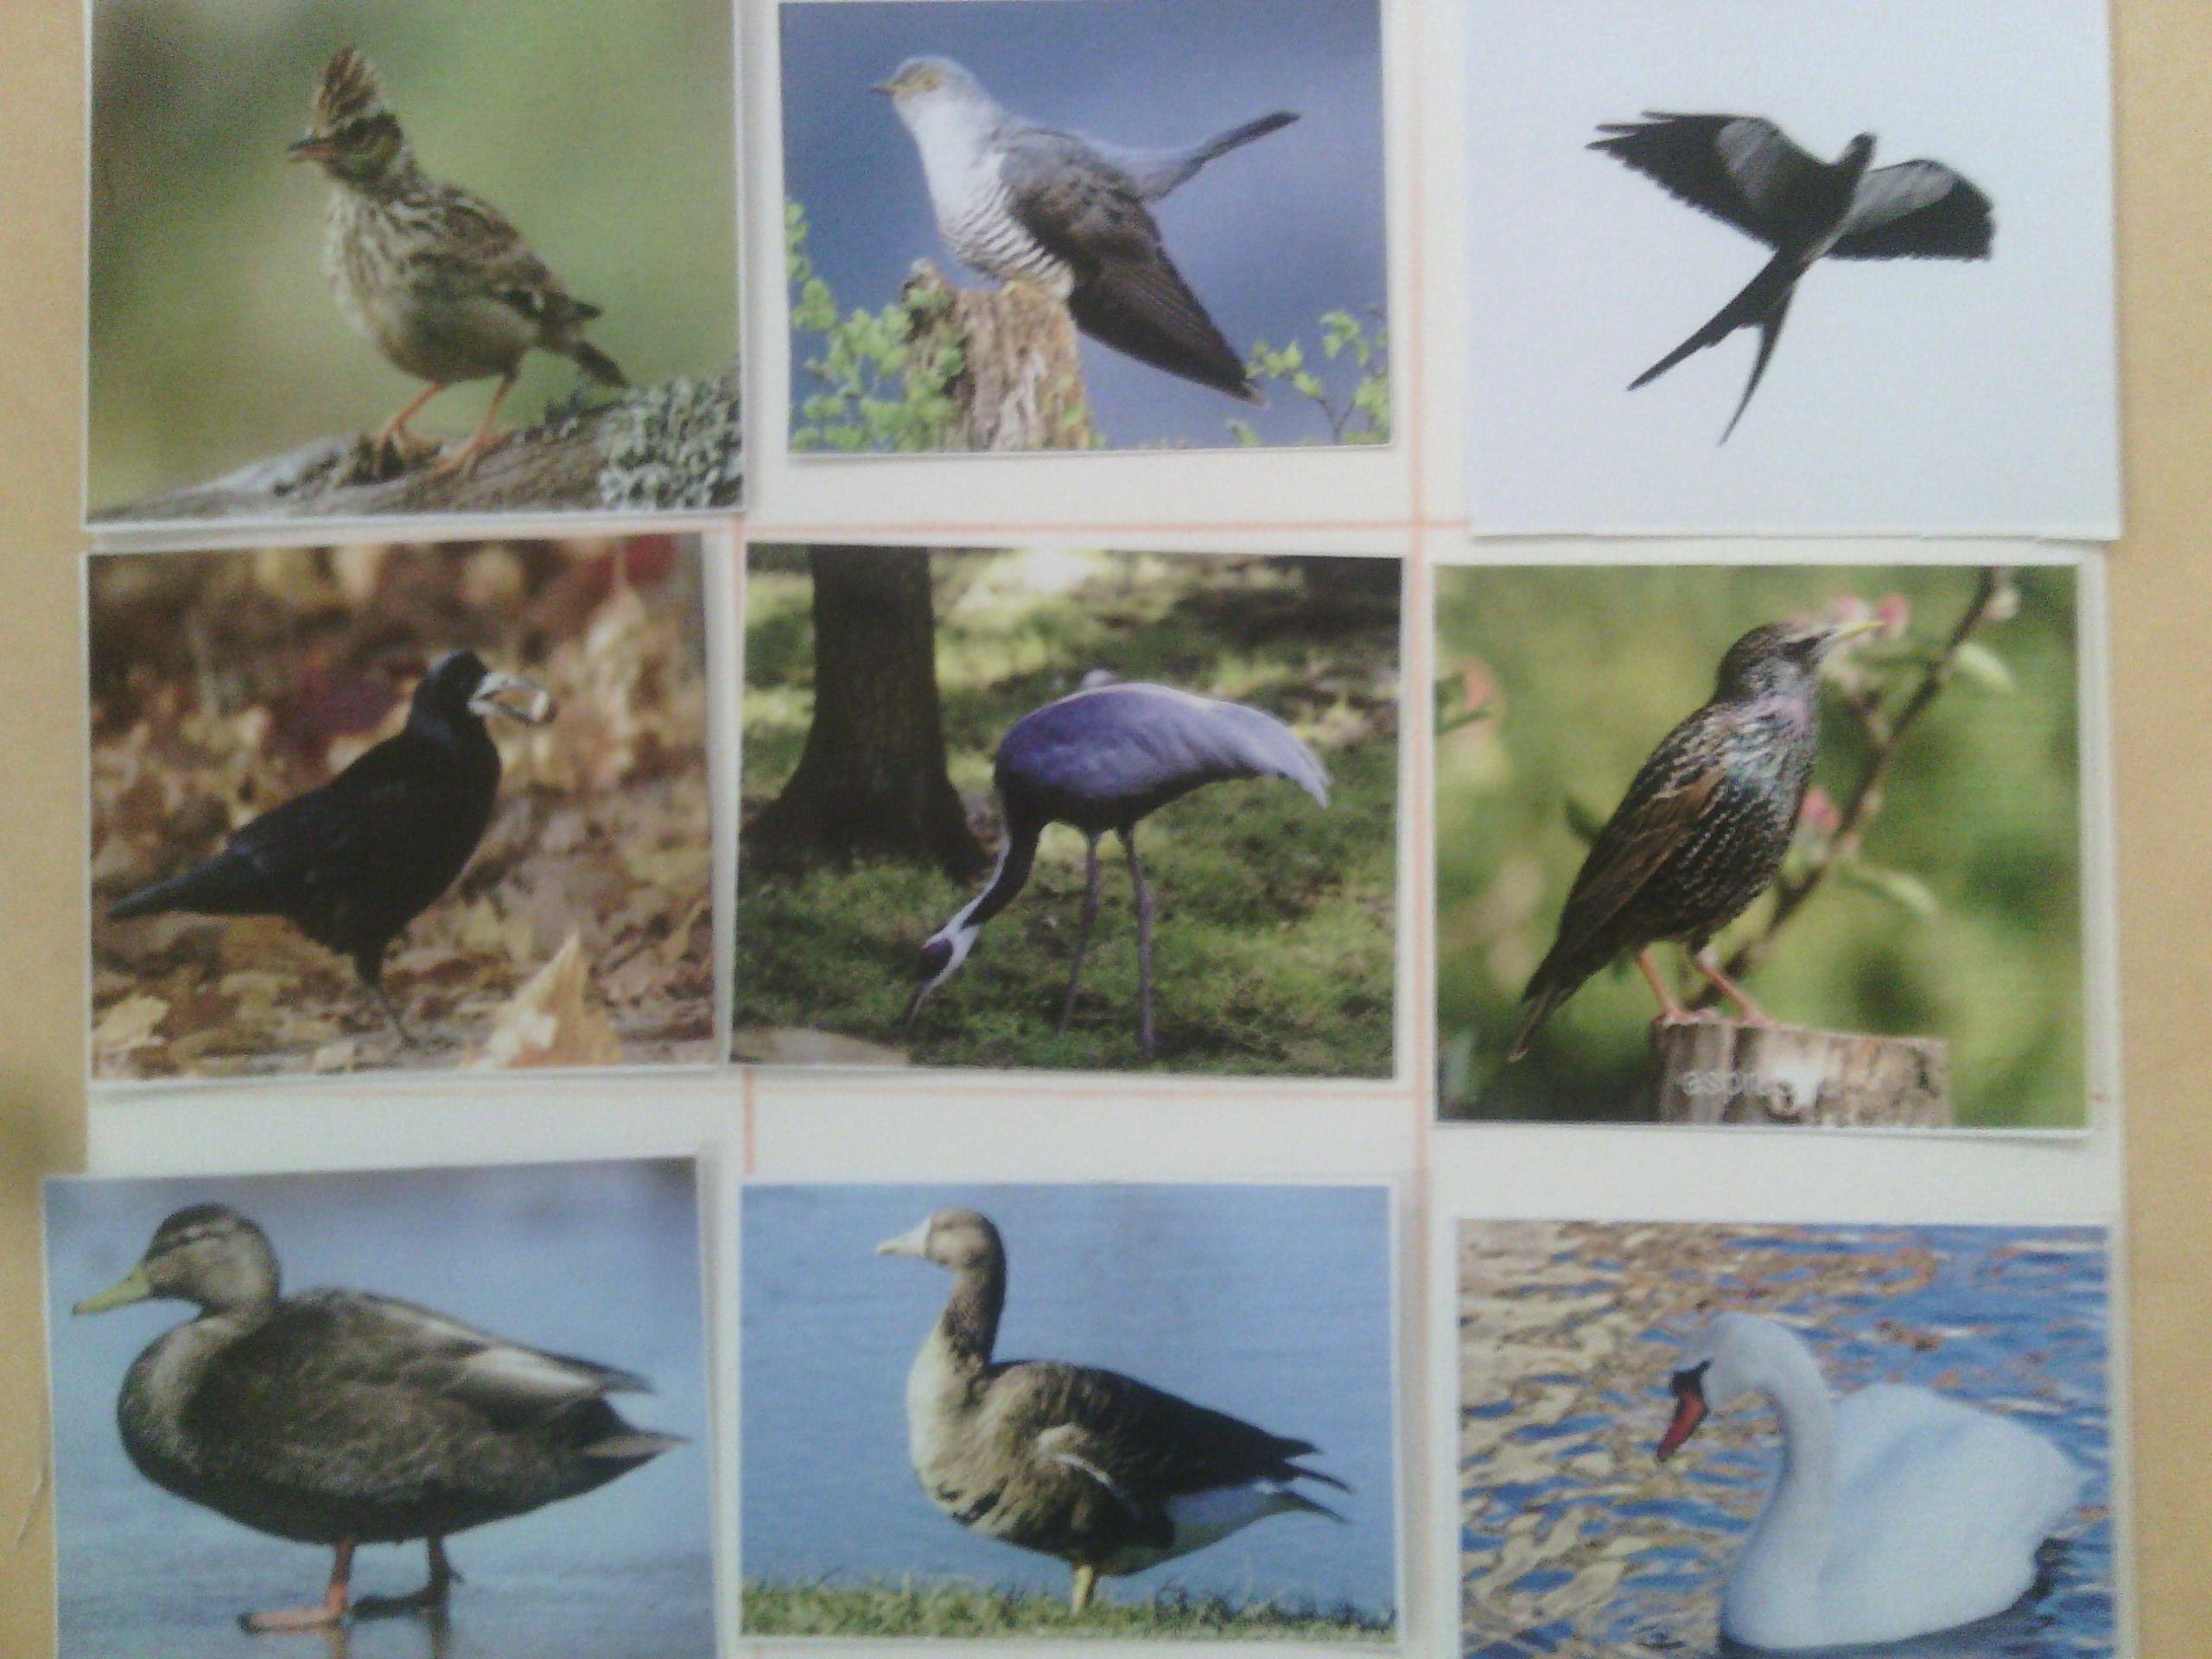 перелетные птицы кировской области фото с названиями